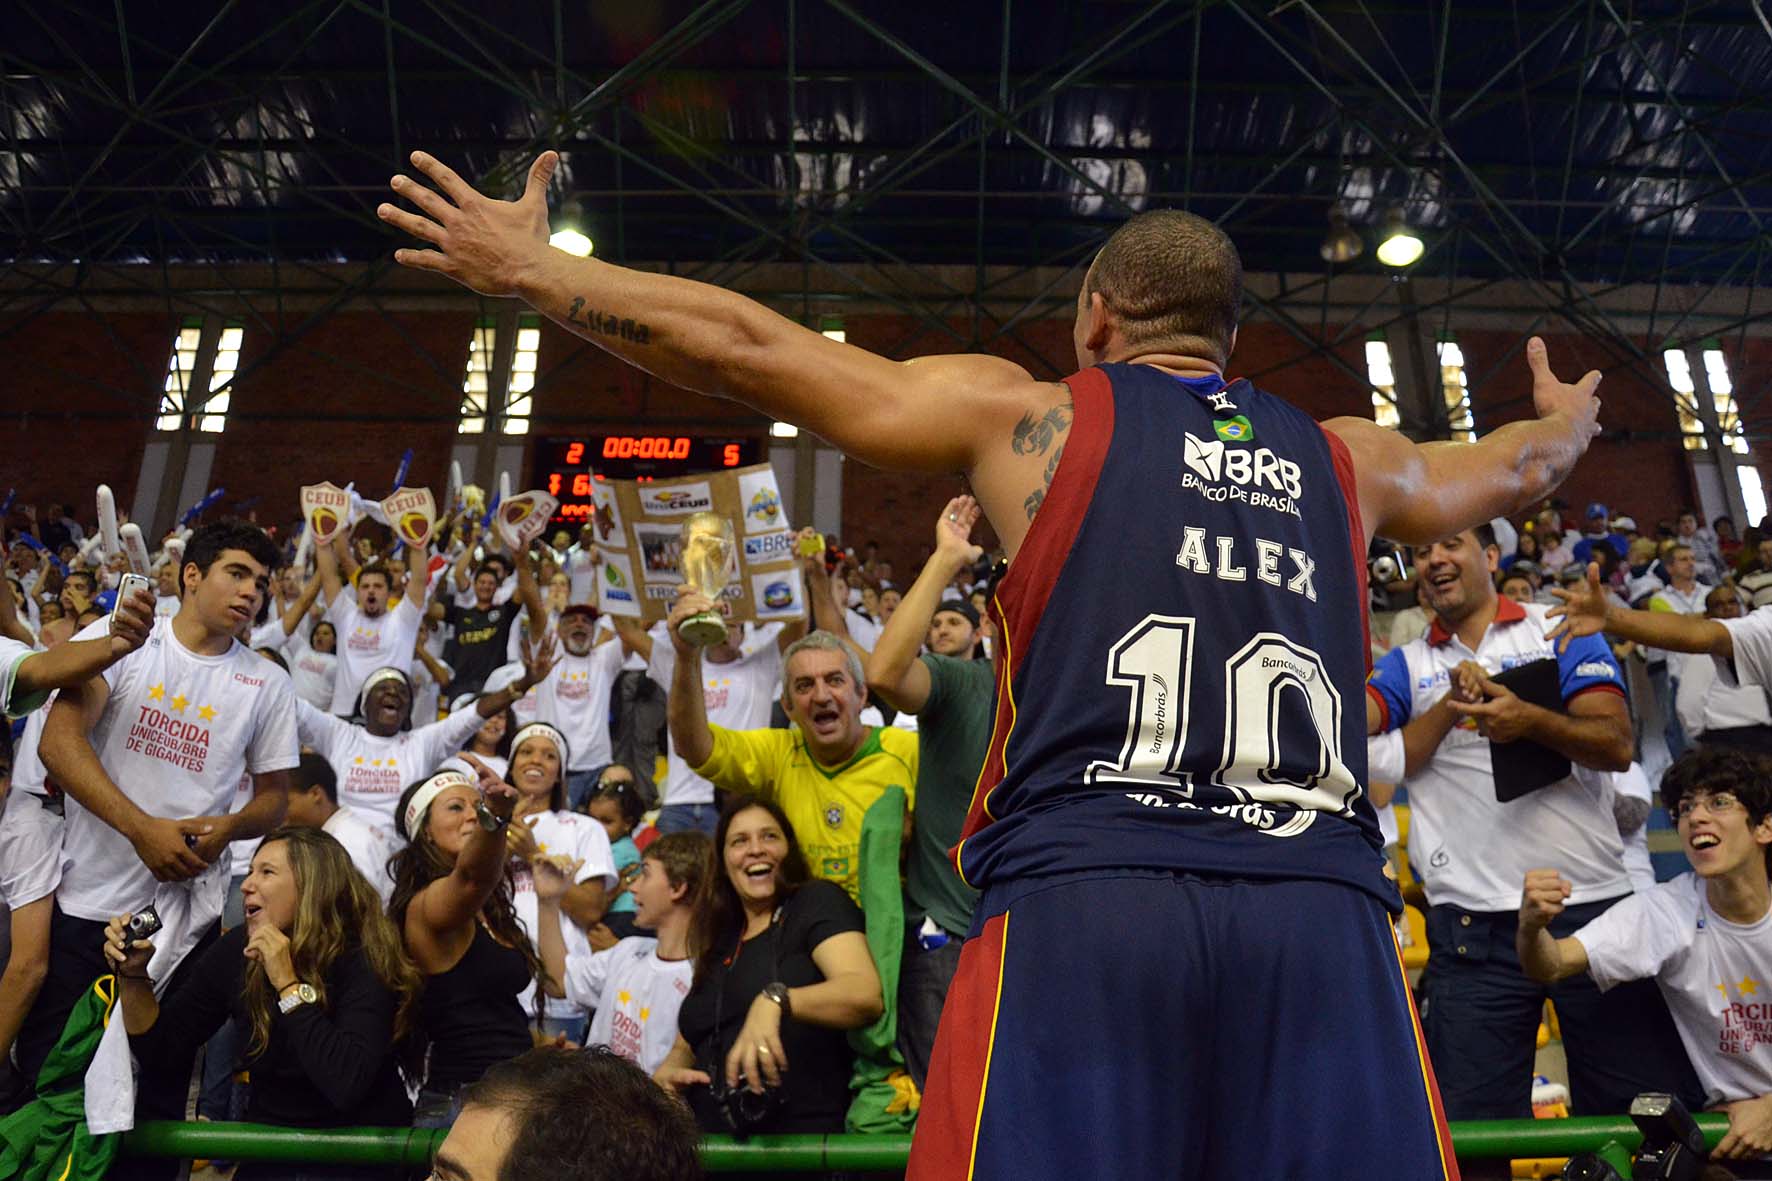 Tricampeão do NBB, campeão da Liga das Américas e bi Sul-Americano, Alex é um dos maiores ídolos do basquete candango (João Pires/LNB)